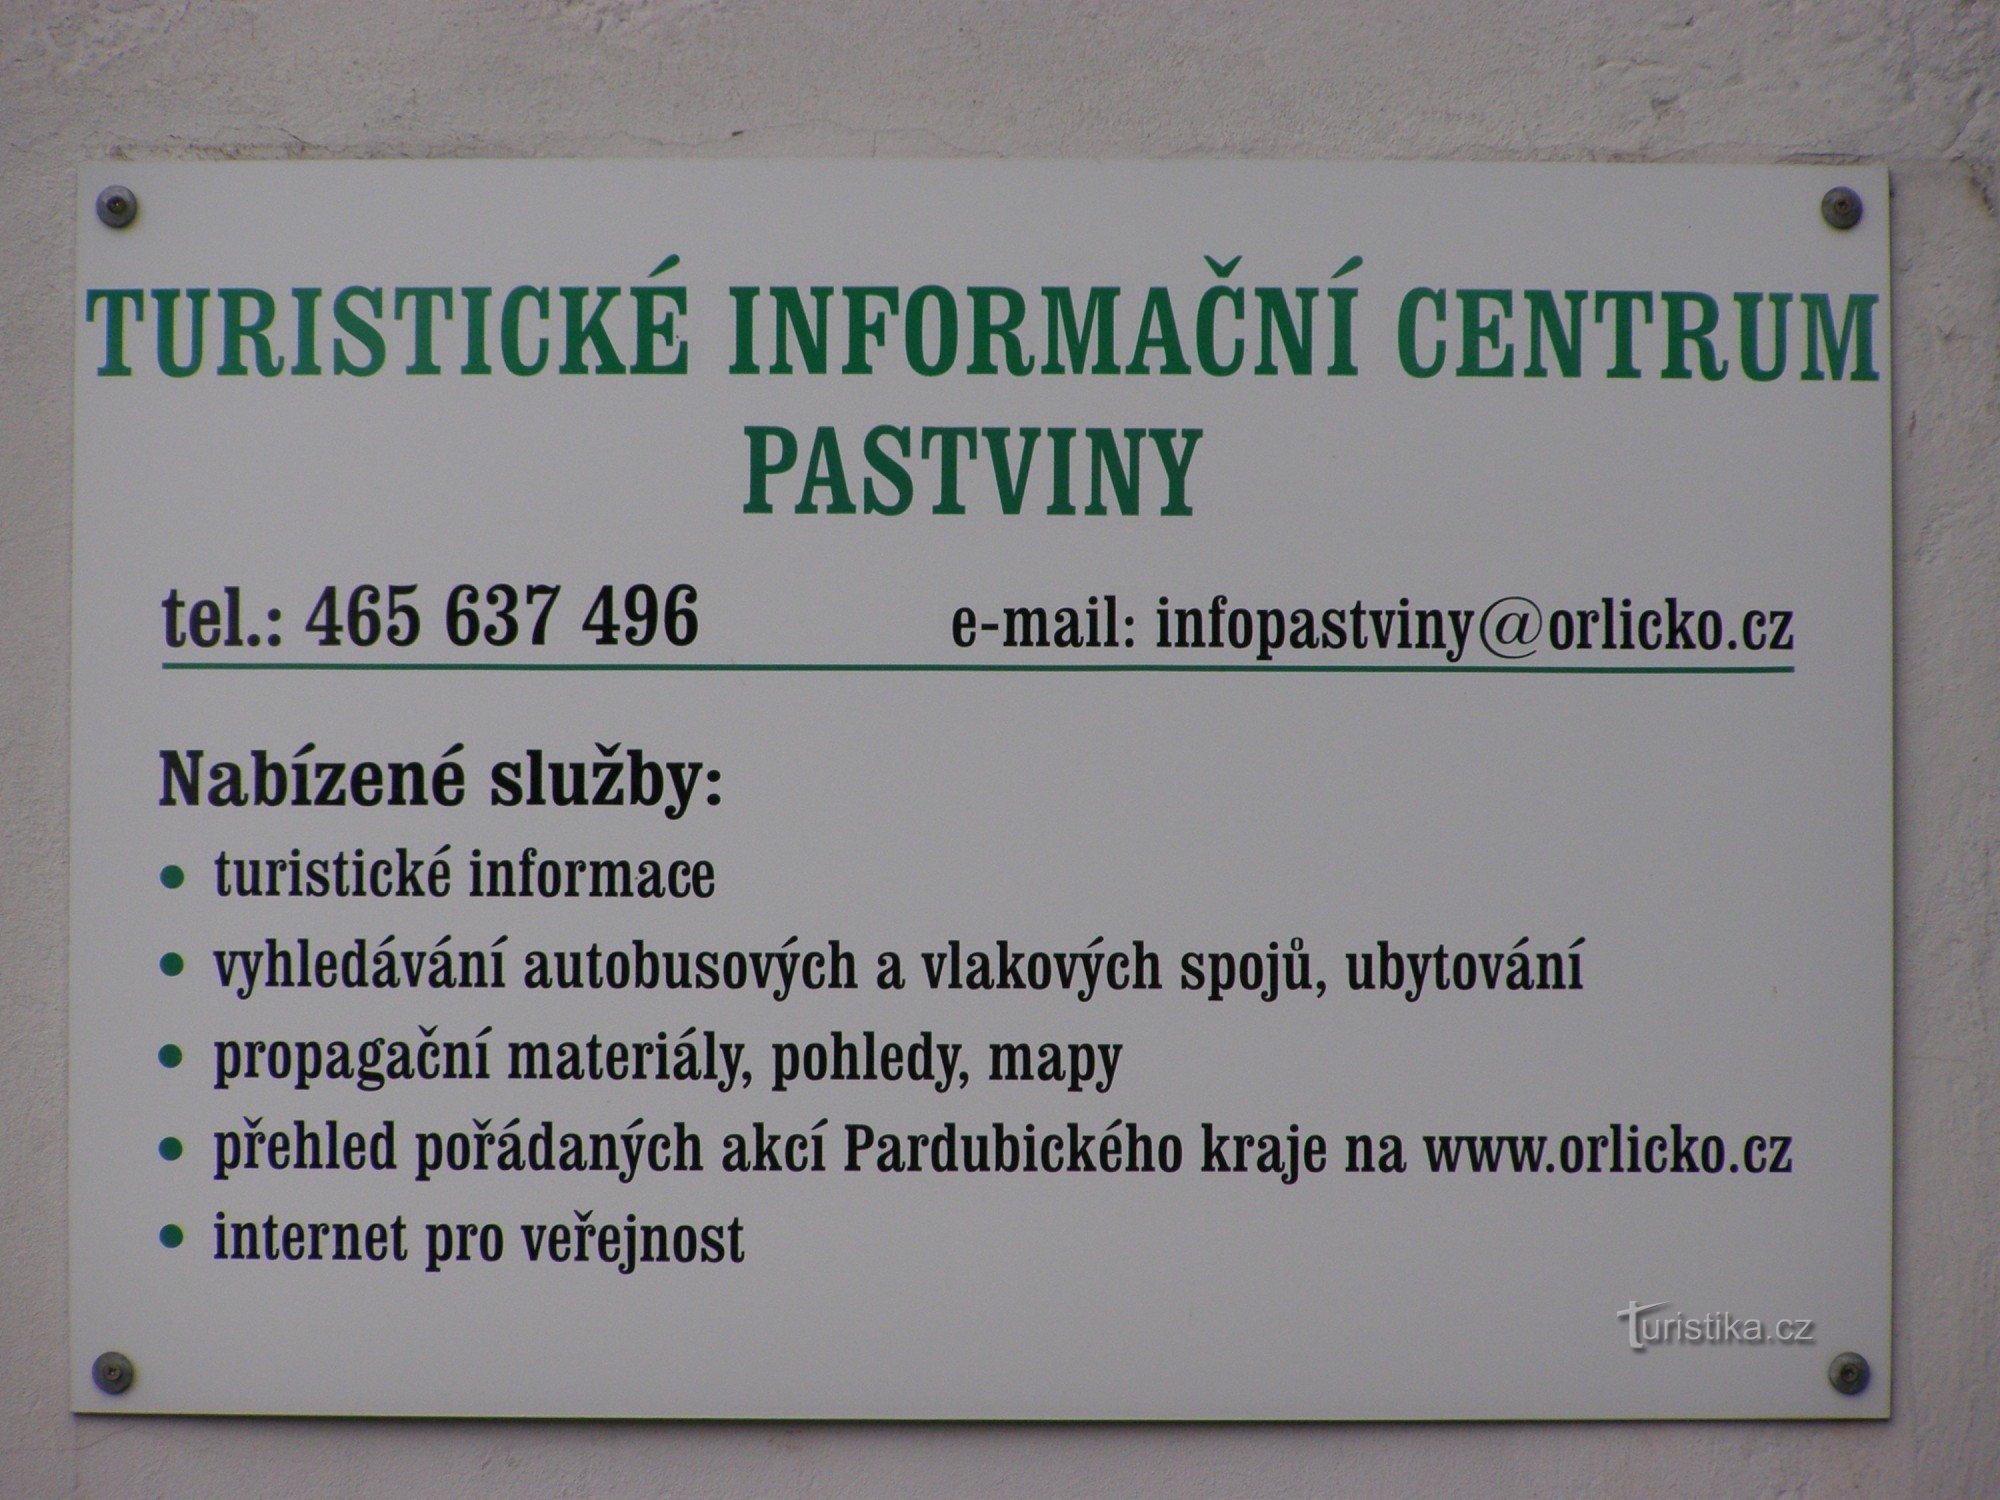 Паствинский туристический информационный центр